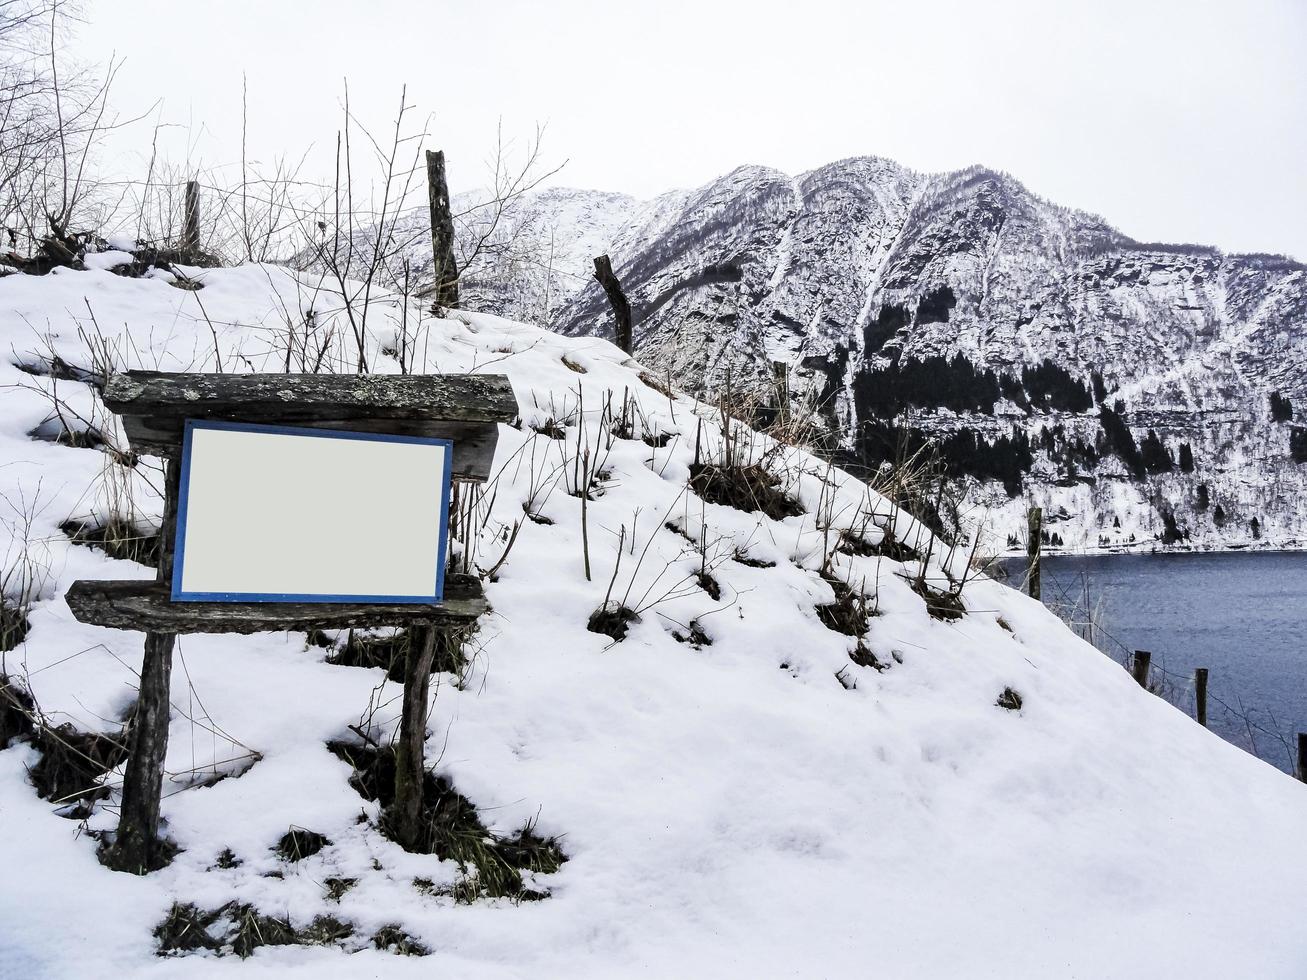 tom trä turistinformation skylt på vintern, norge, vik kommune. foto